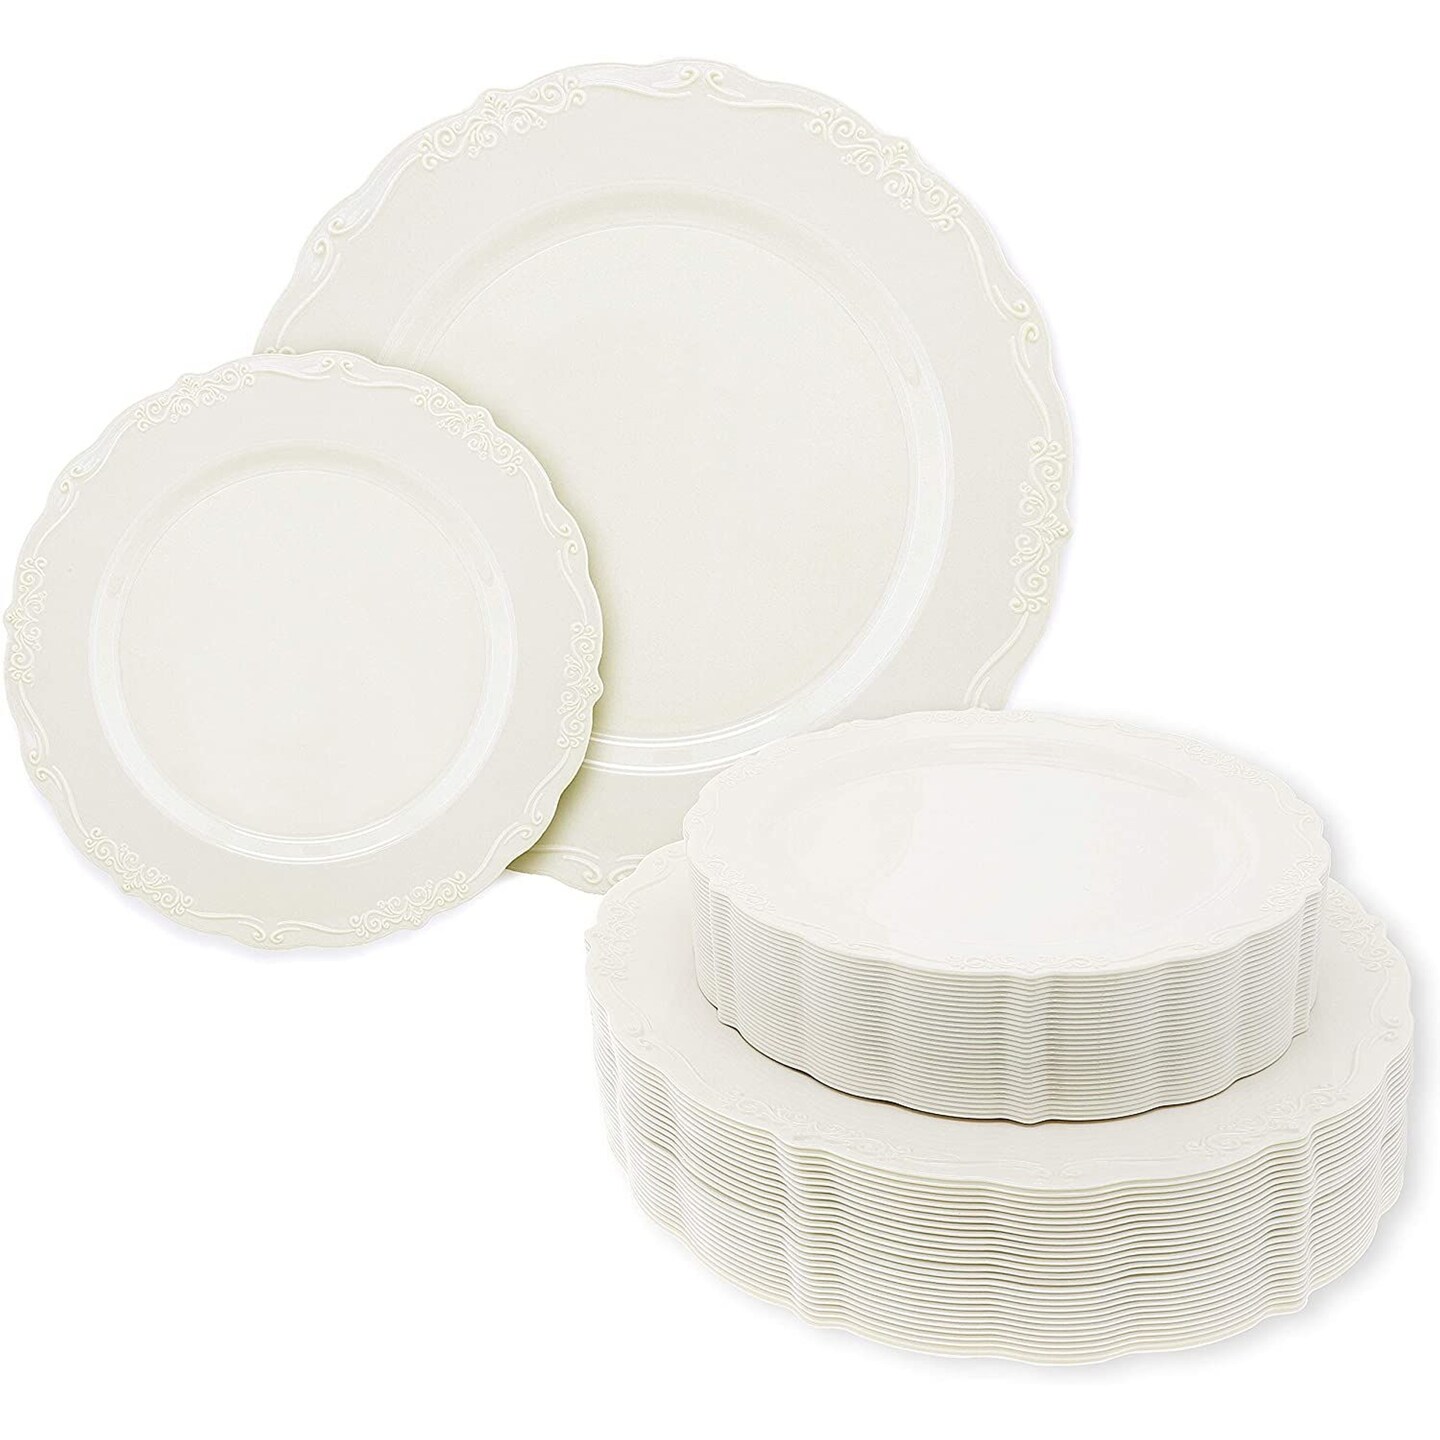 6.3 Disposable Fancy Beige Plastic Dessert Plates Edge Collection